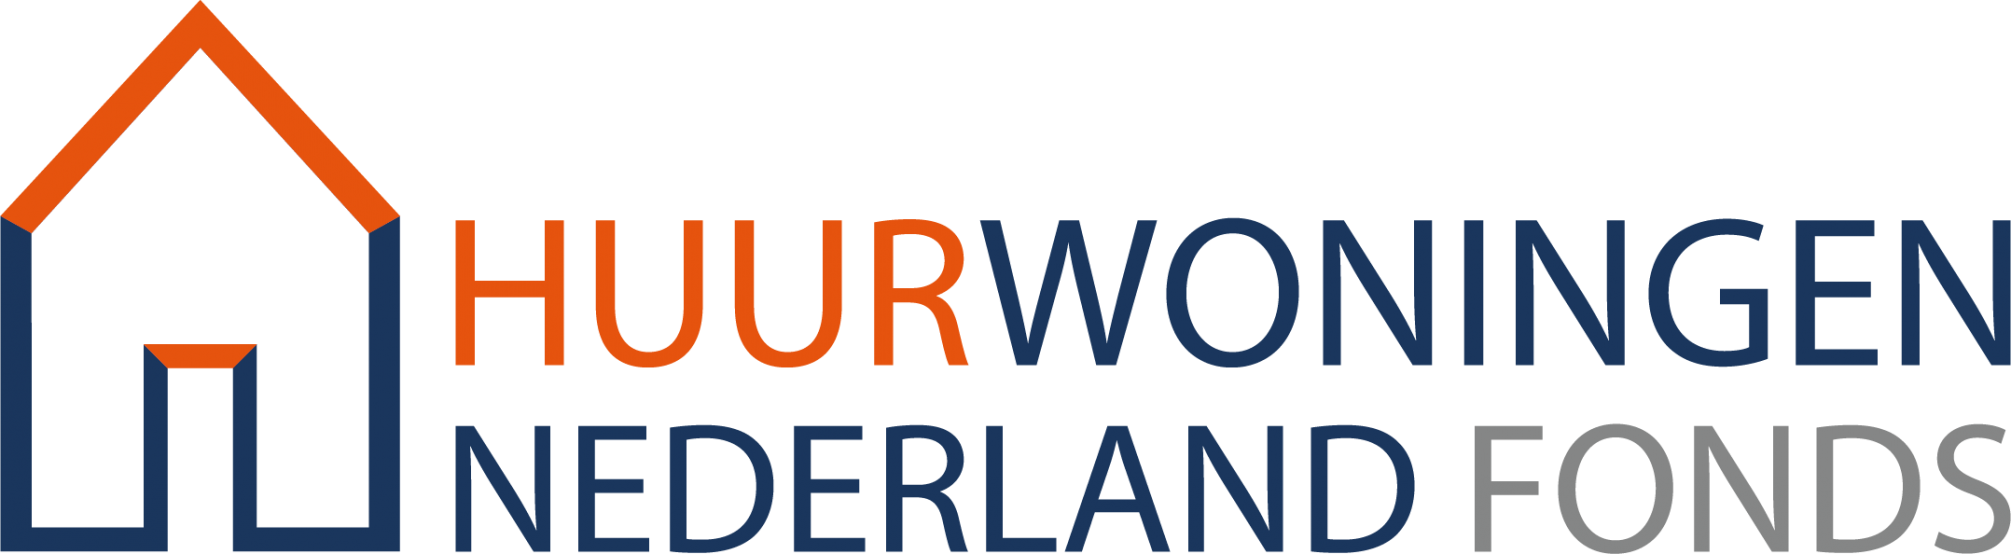 Huurwoningen Nederland Fonds - beleggen in nieuwe en jonge huurwoningen